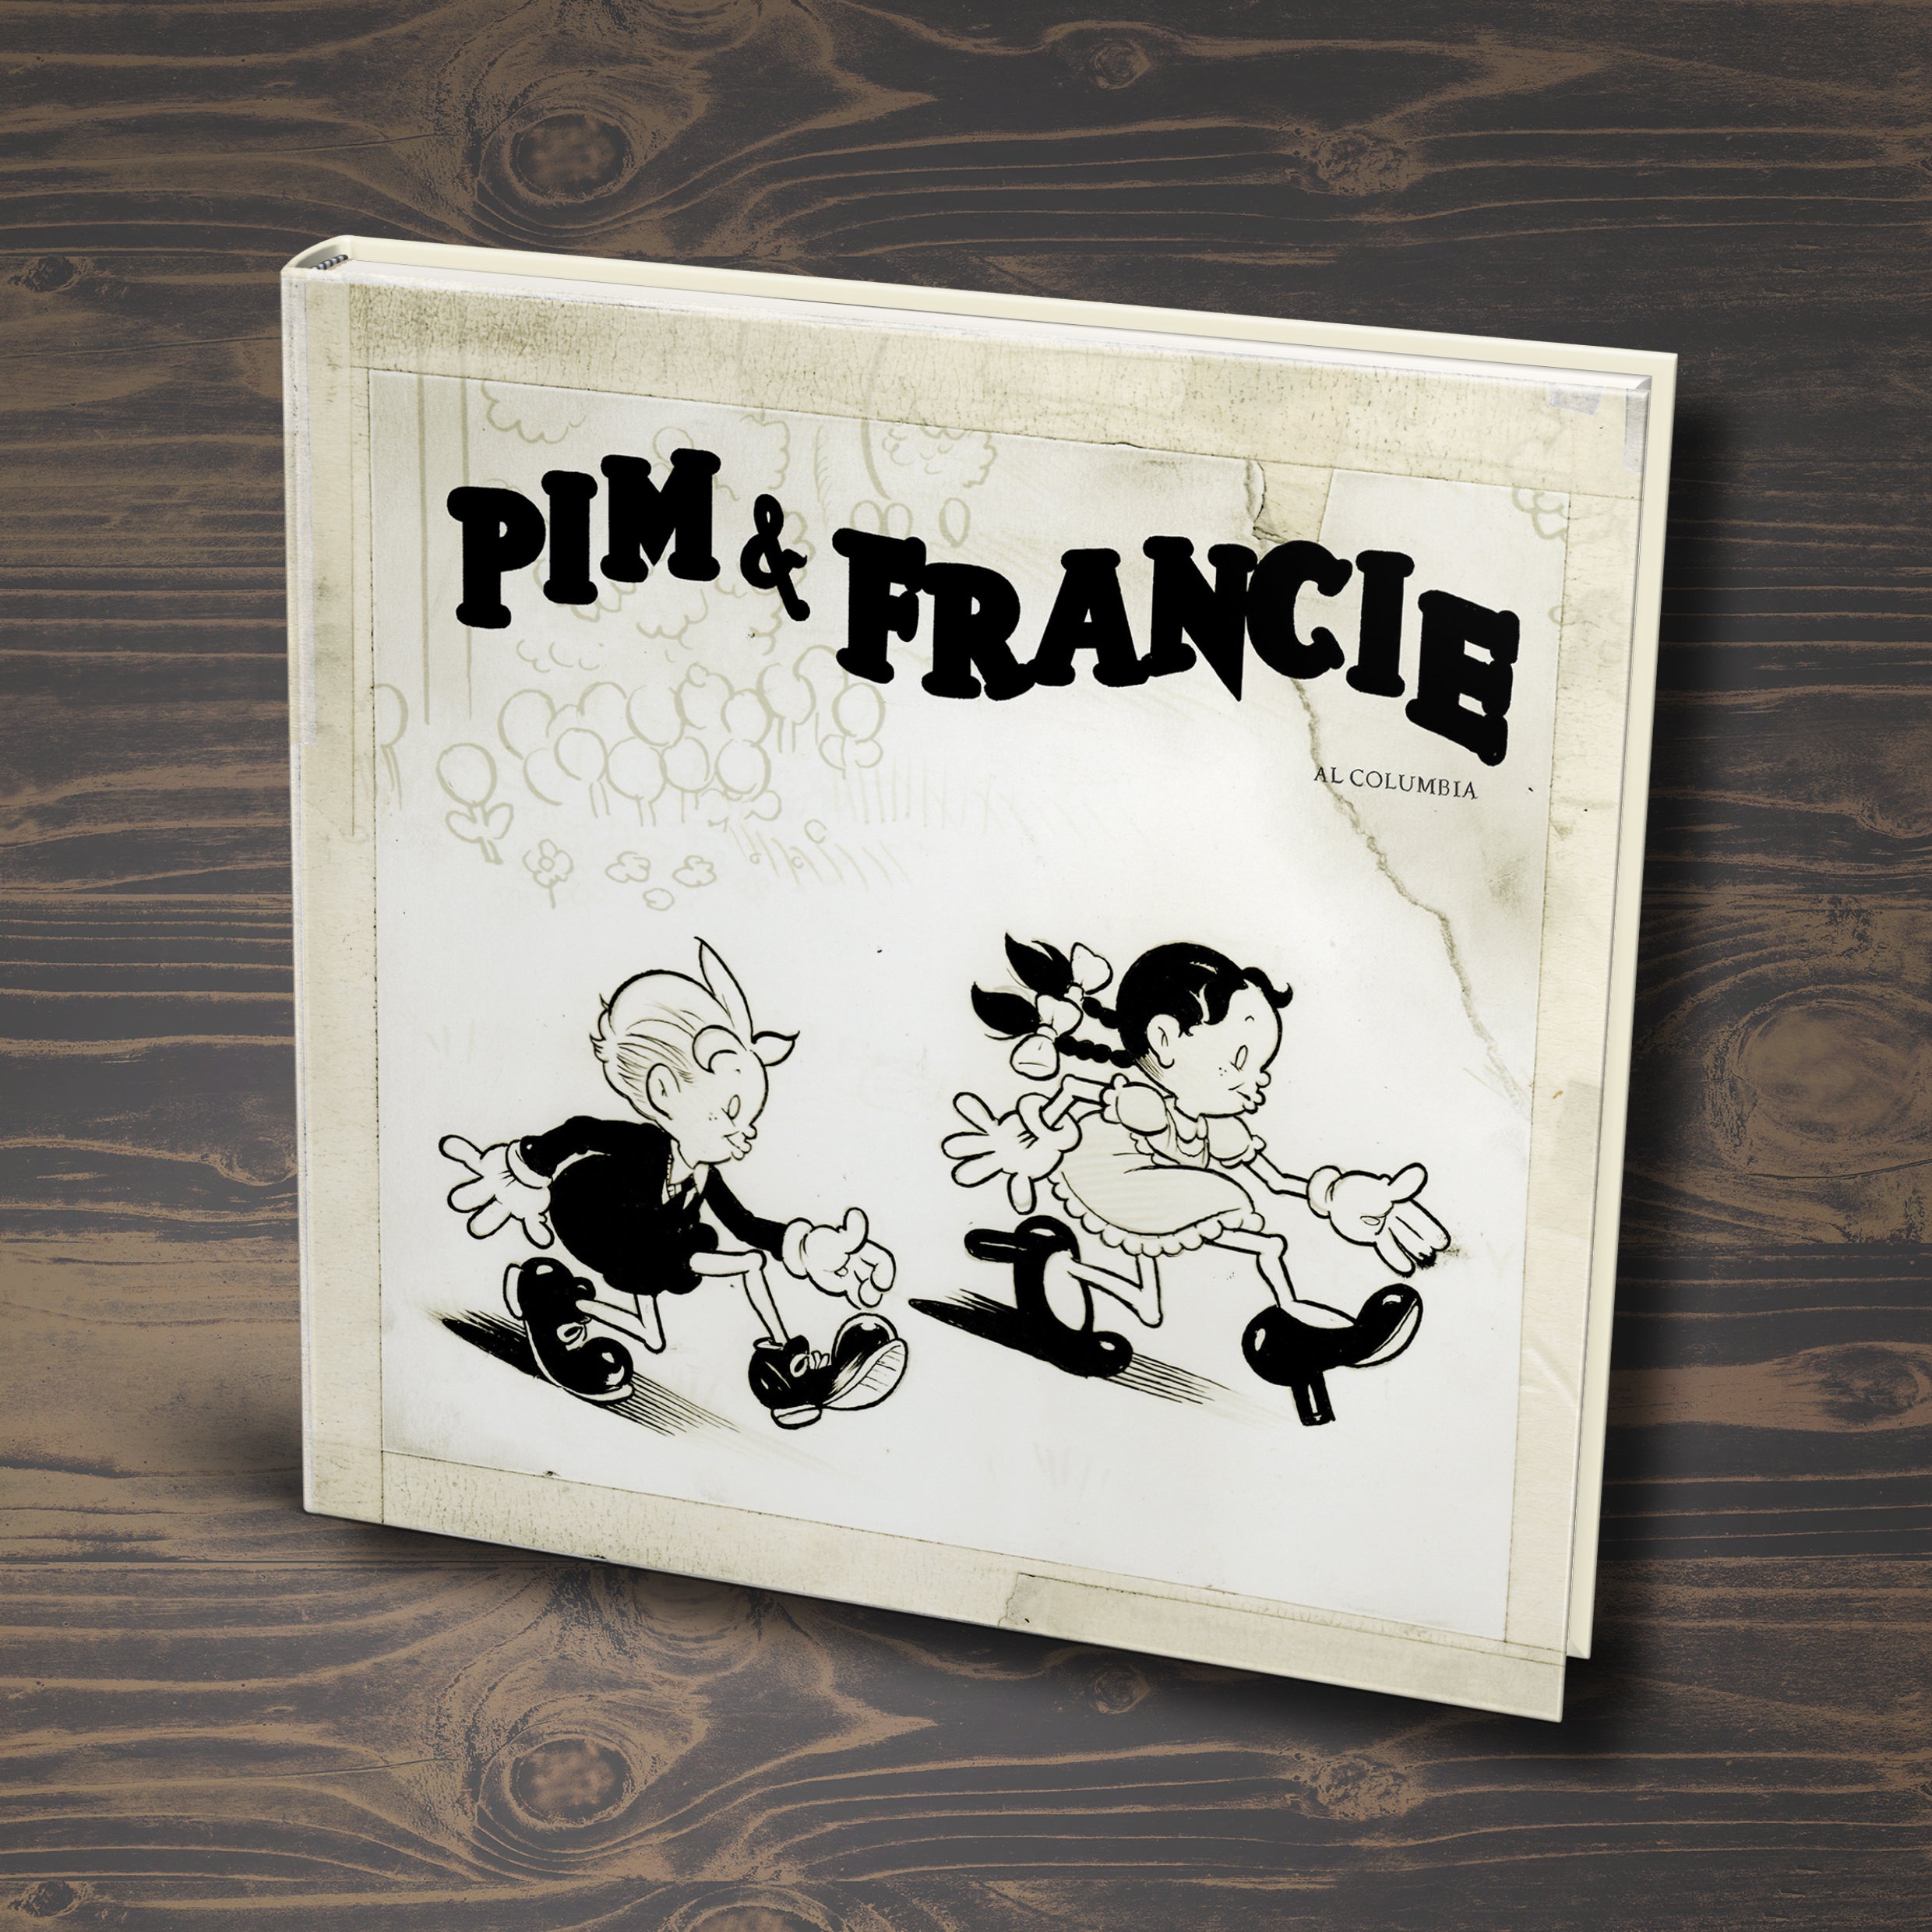 Pim & Francie FRENCH edition